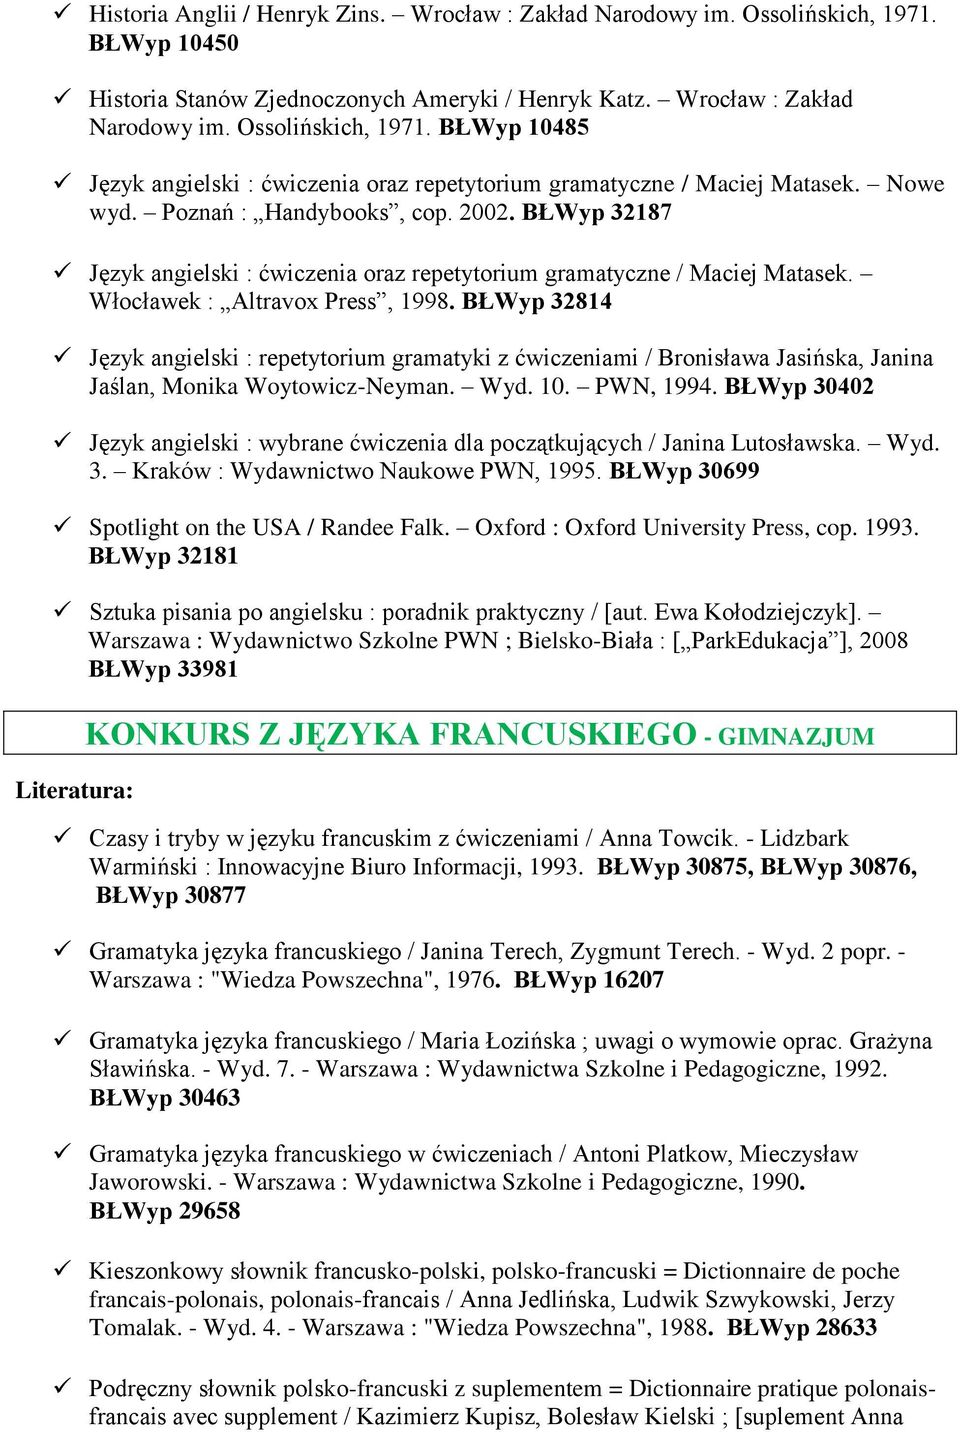 BŁWyp 32814 Język angielski : repetytorium gramatyki z ćwiczeniami / Bronisława Jasińska, Janina Jaślan, Monika Woytowicz-Neyman. Wyd. 10. PWN, 1994.